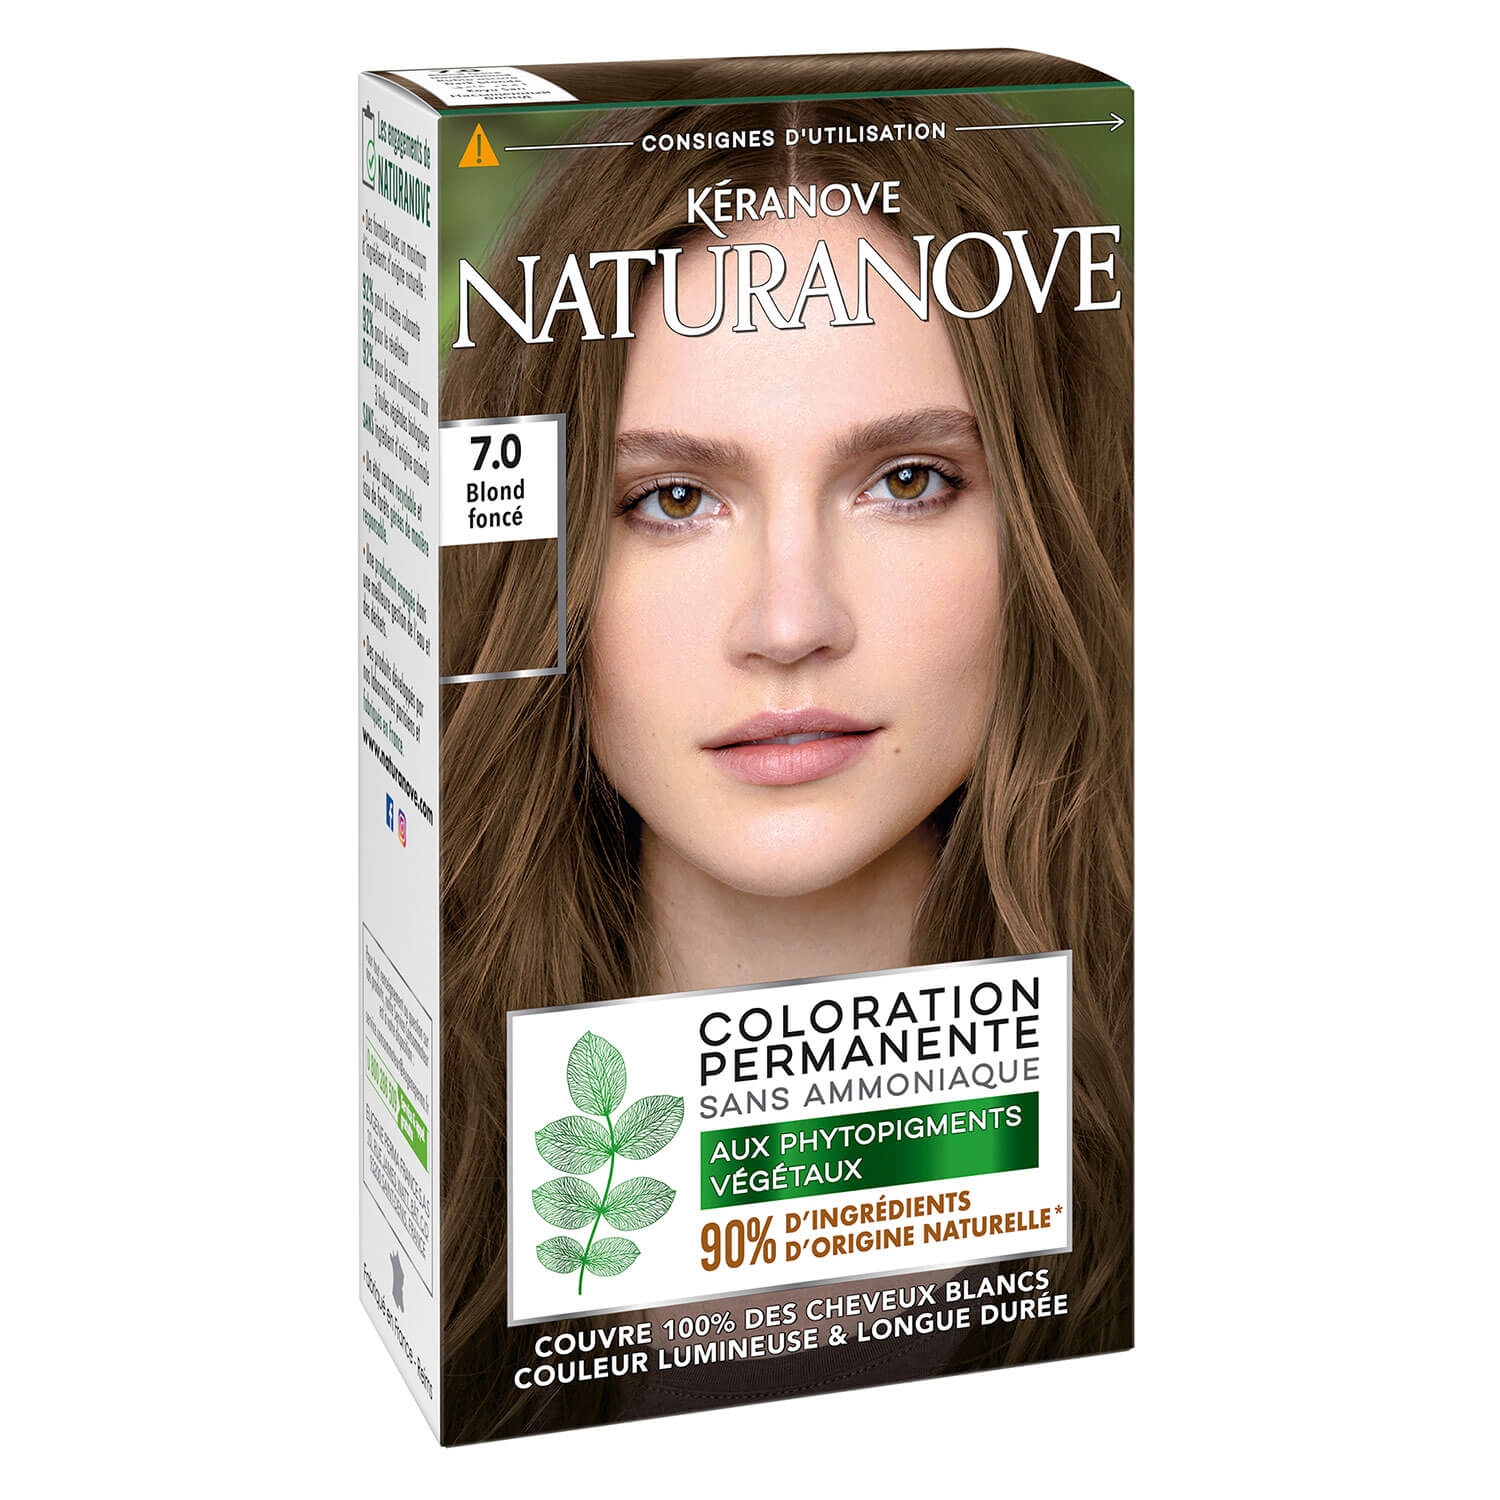 Produktbild von Naturanove - Dauerhafte Haarfarbe Dunkelblond 7.0